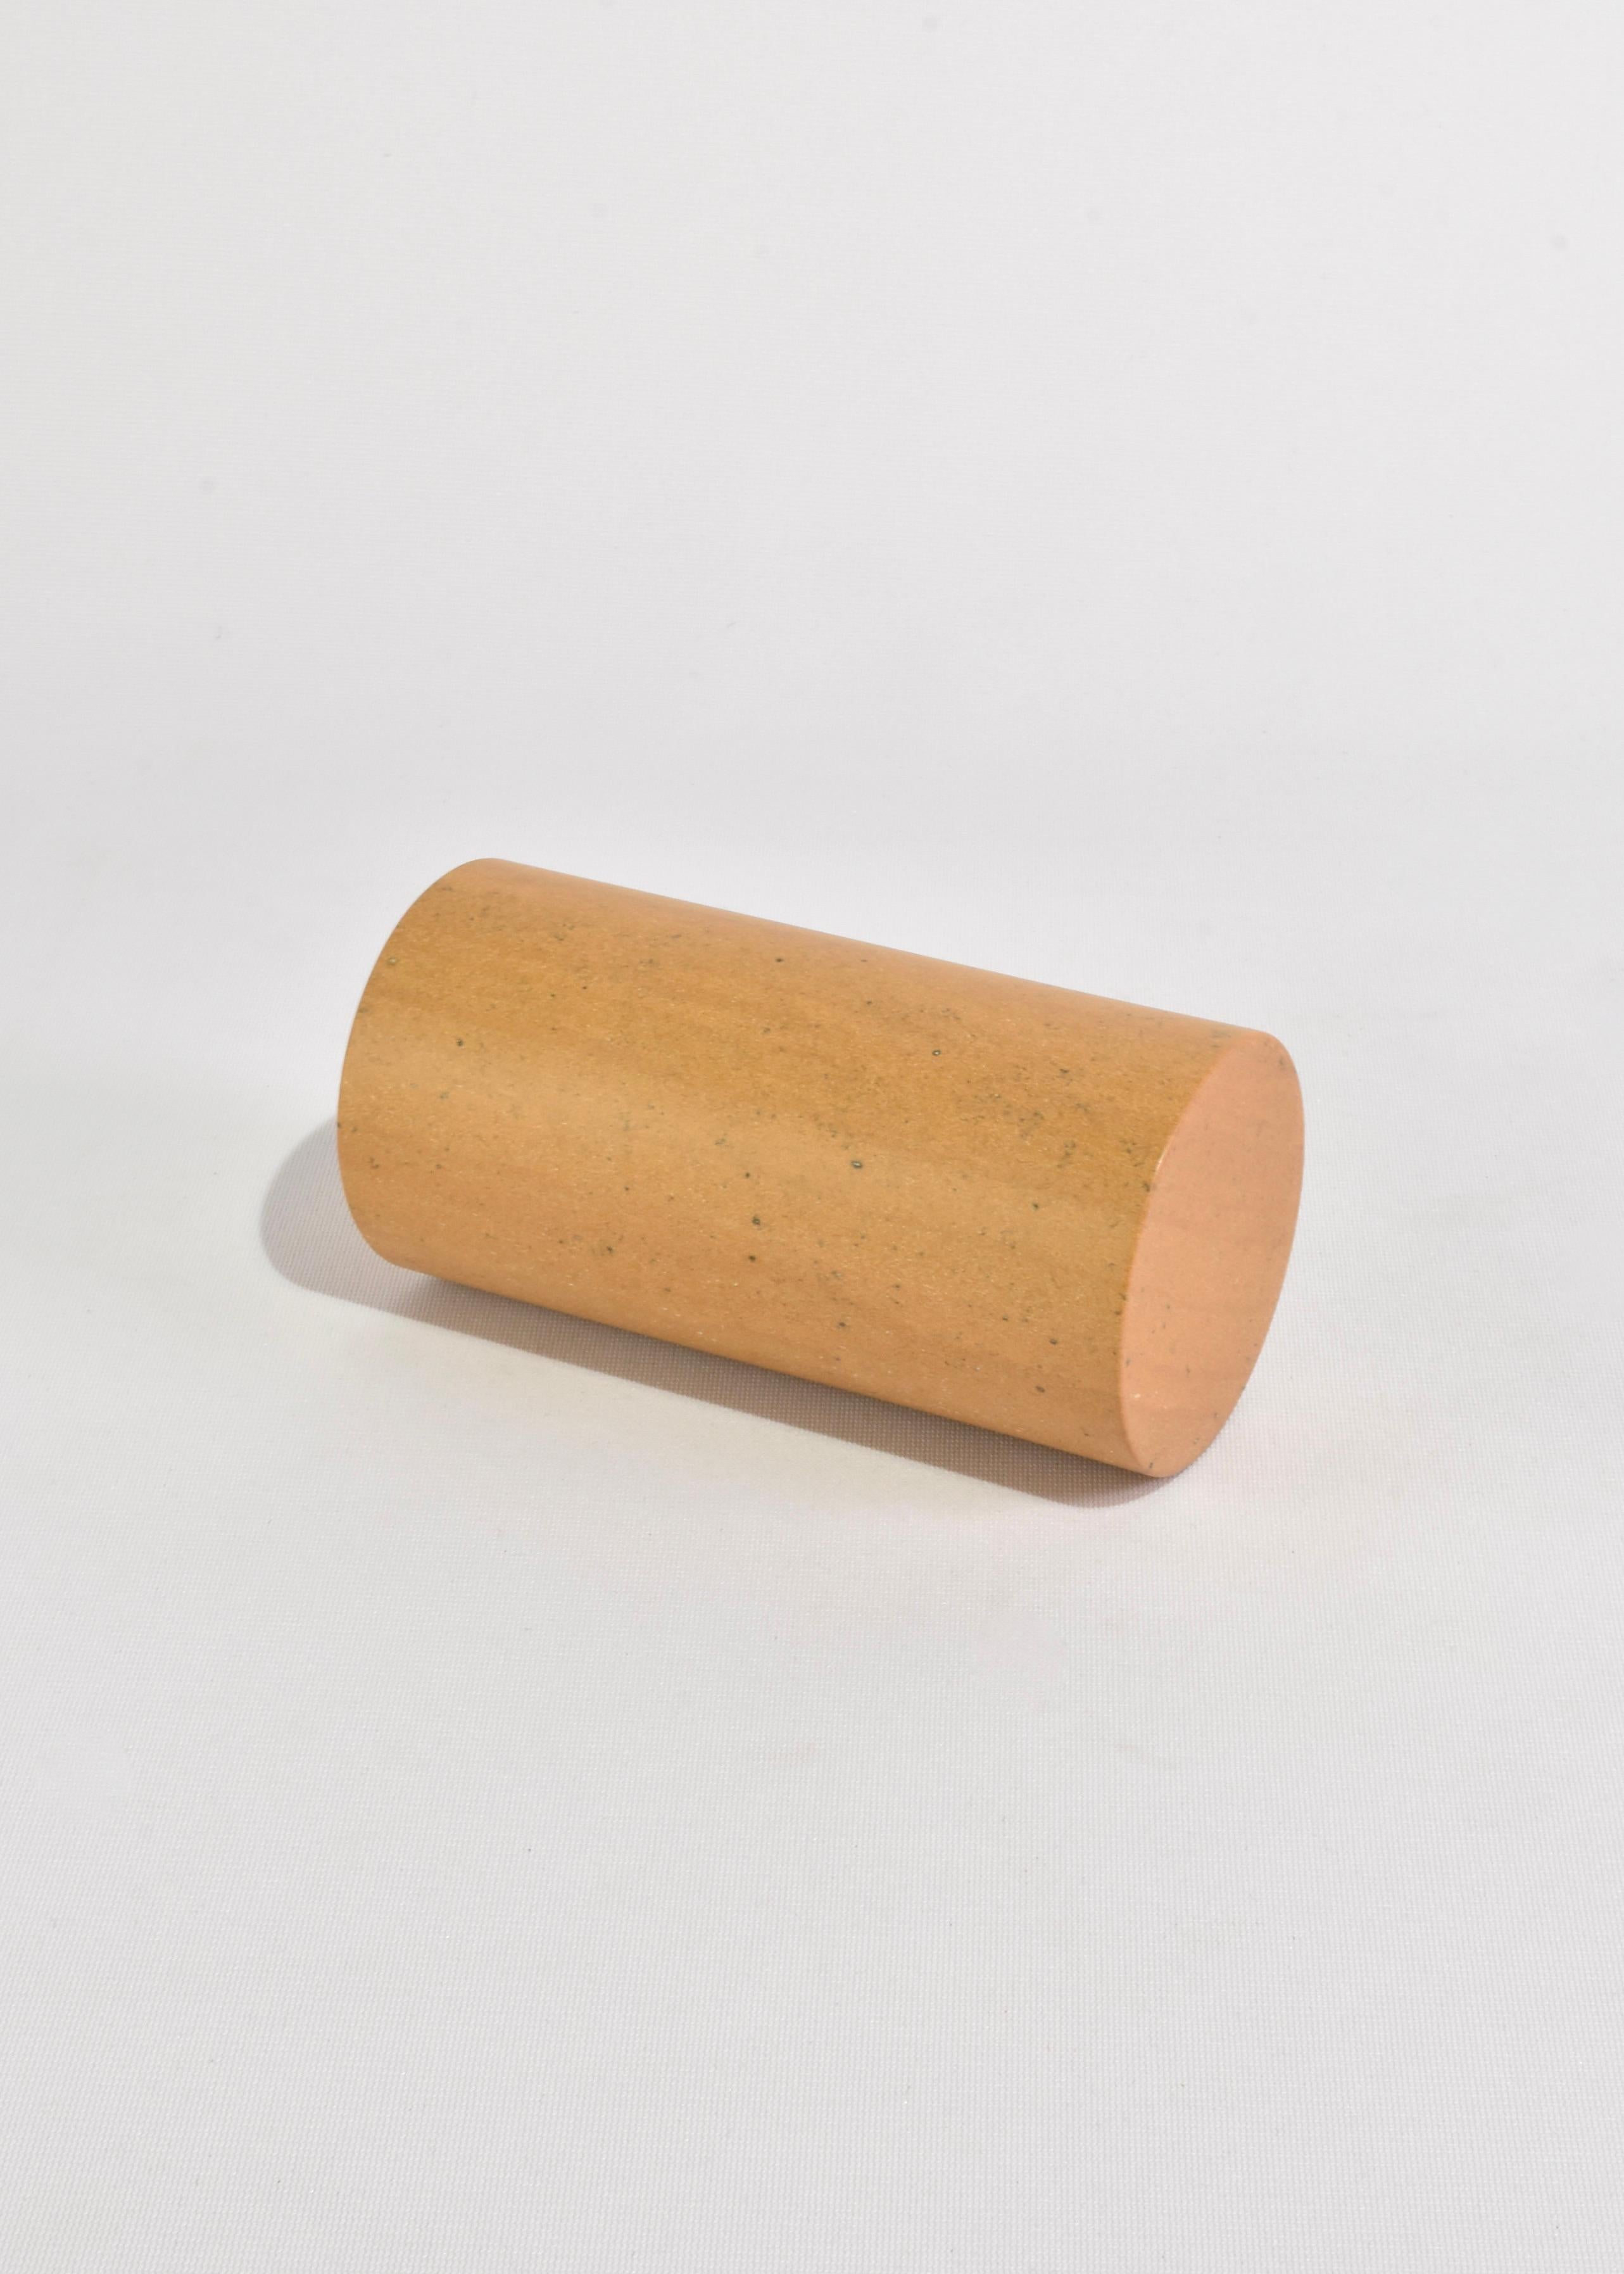 Sandstone Cylinder Bookend For Sale 3